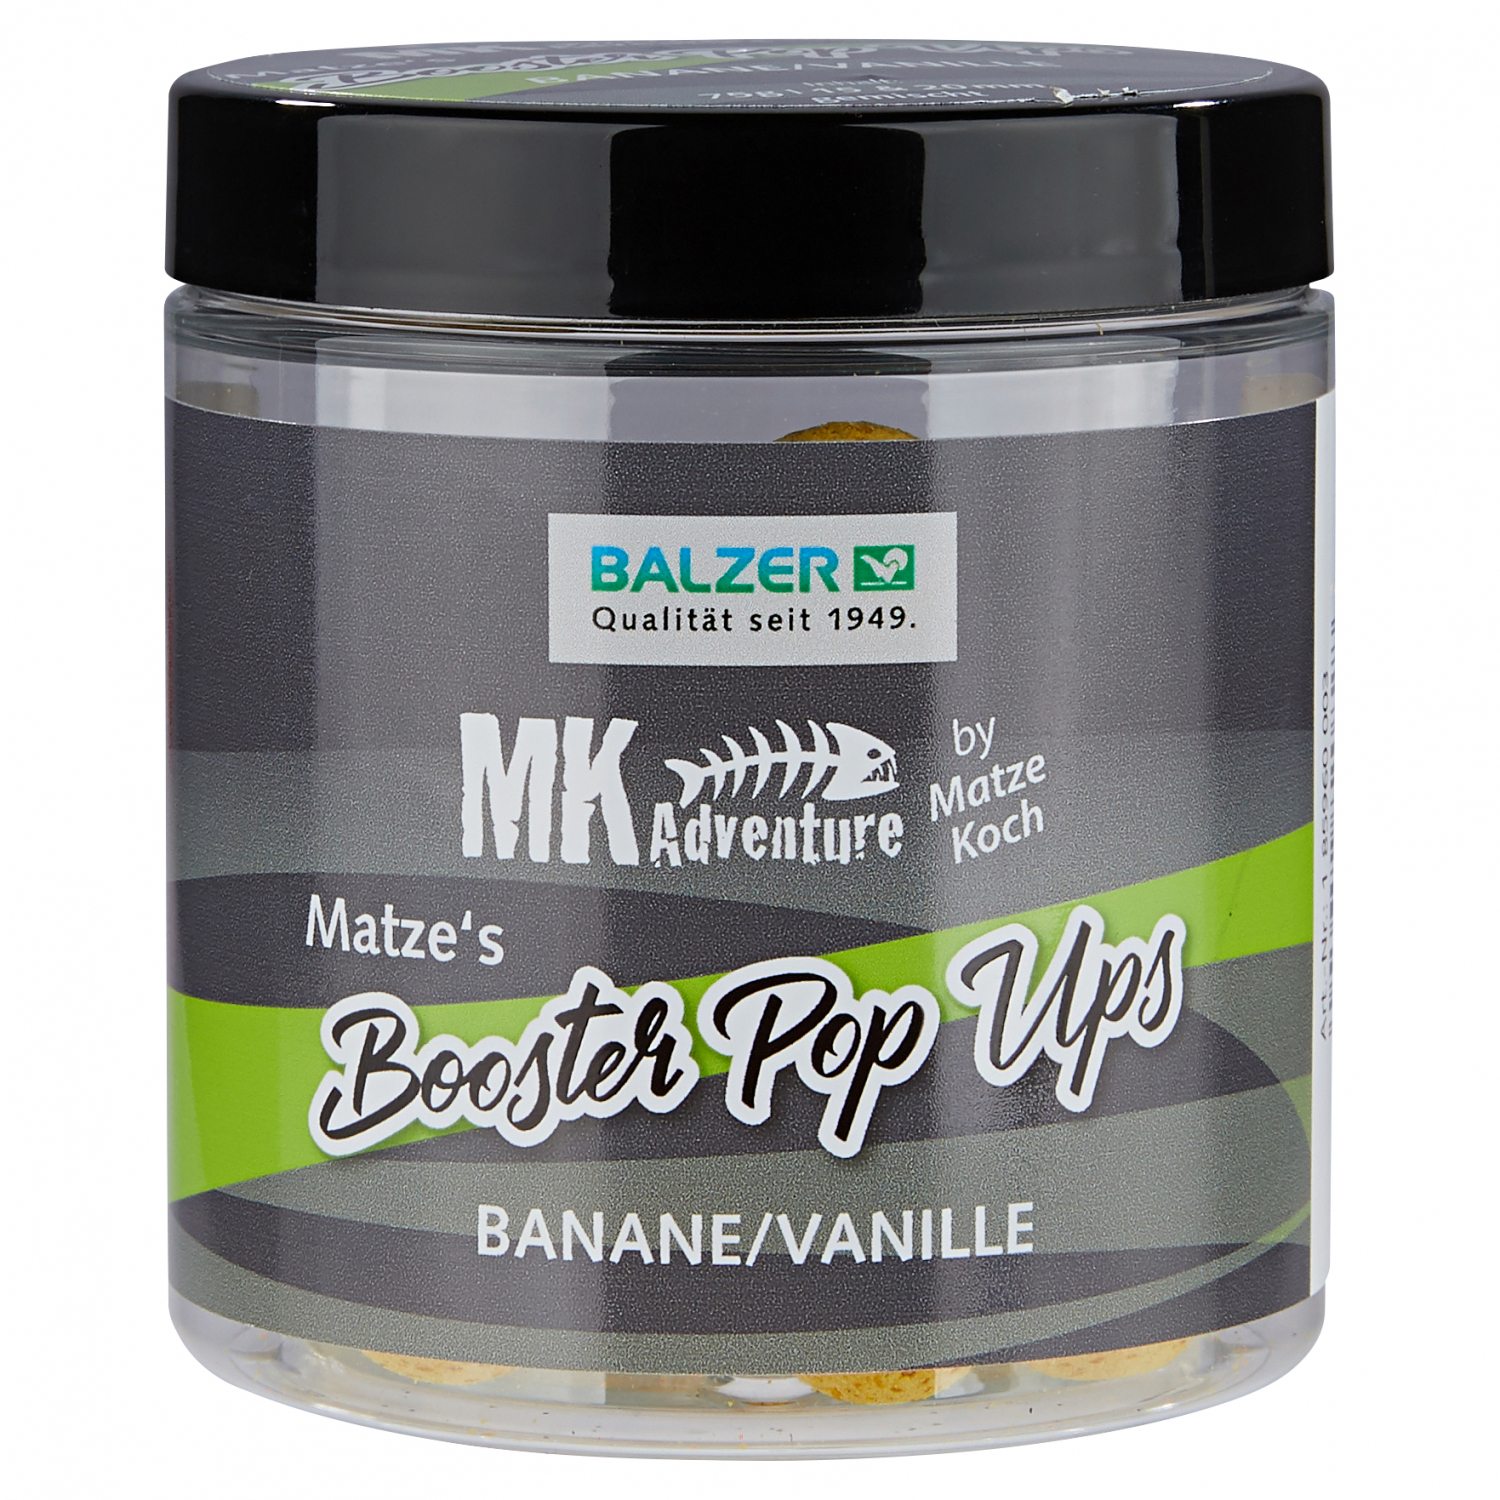 Matze Koch Pop-Ups MK Adventure Booster Balls (Banane/Vanille) 